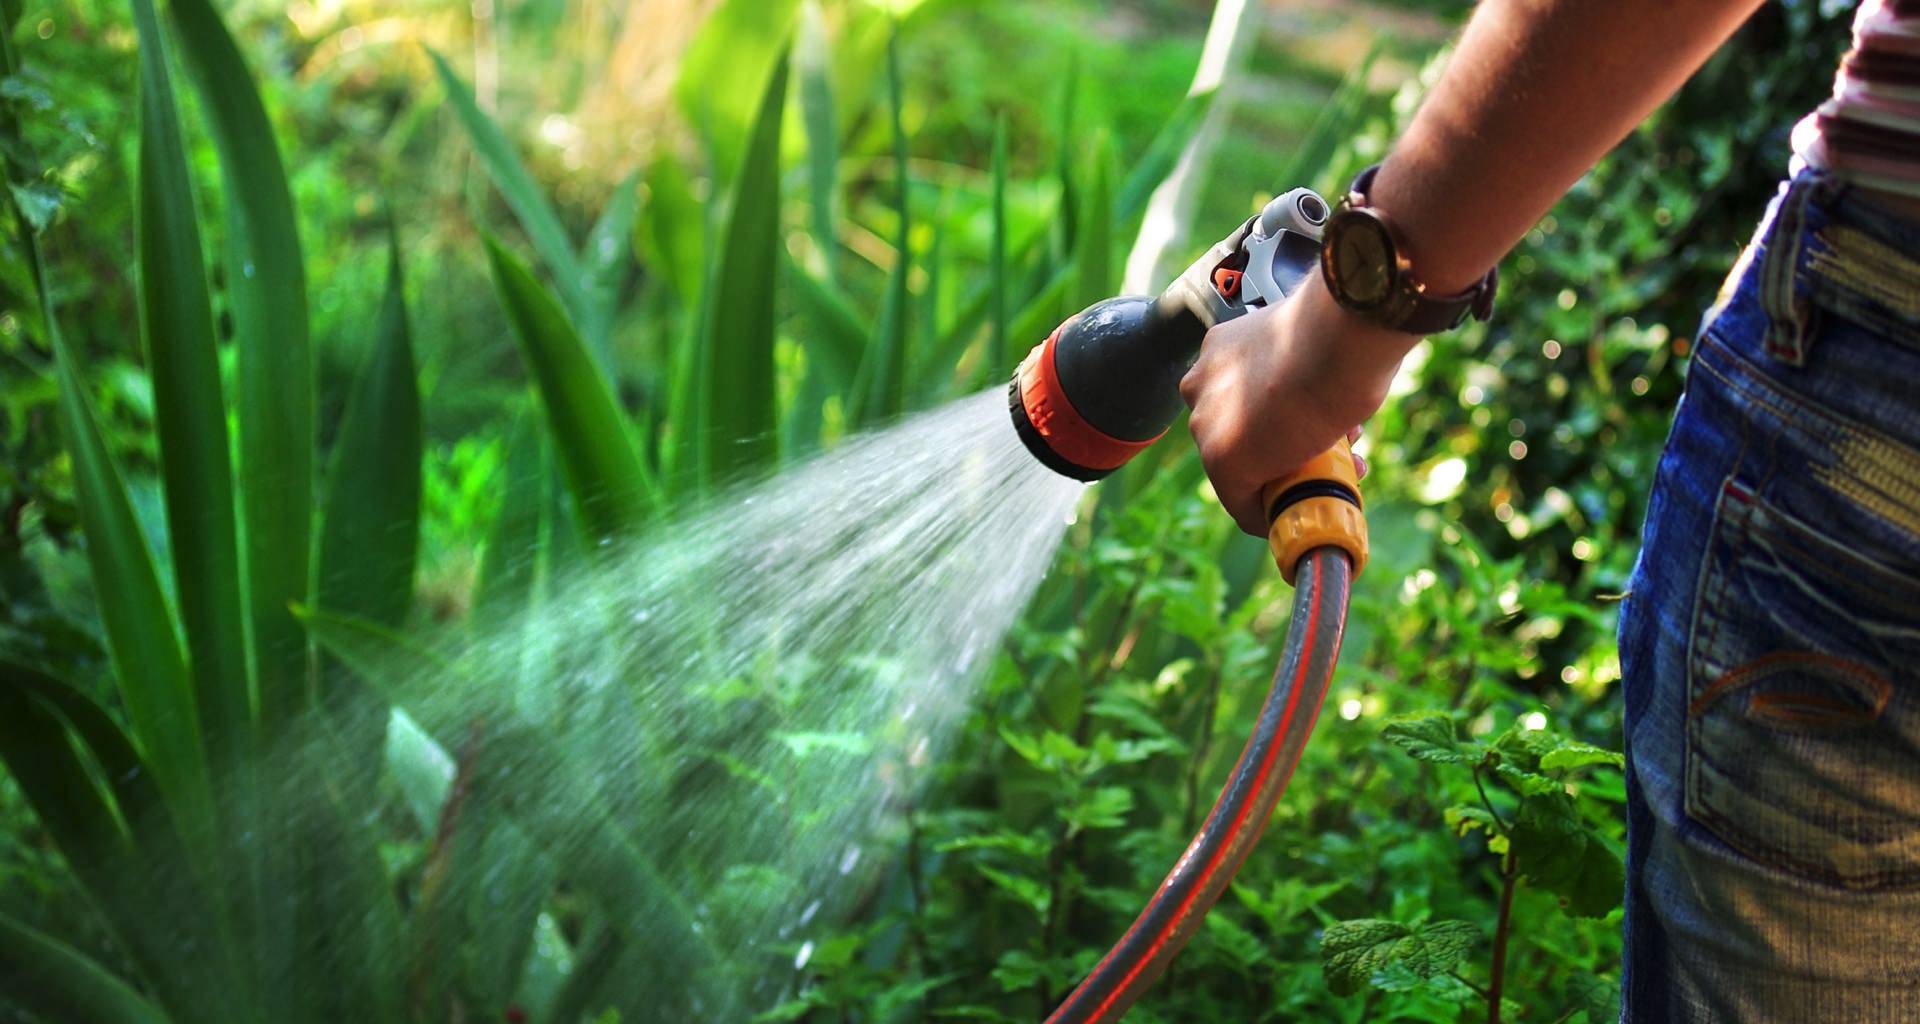 Можно ли поливать водой из бассейна огород, деревья или газон
можно ли поливать водой из бассейна огород, деревья или газон